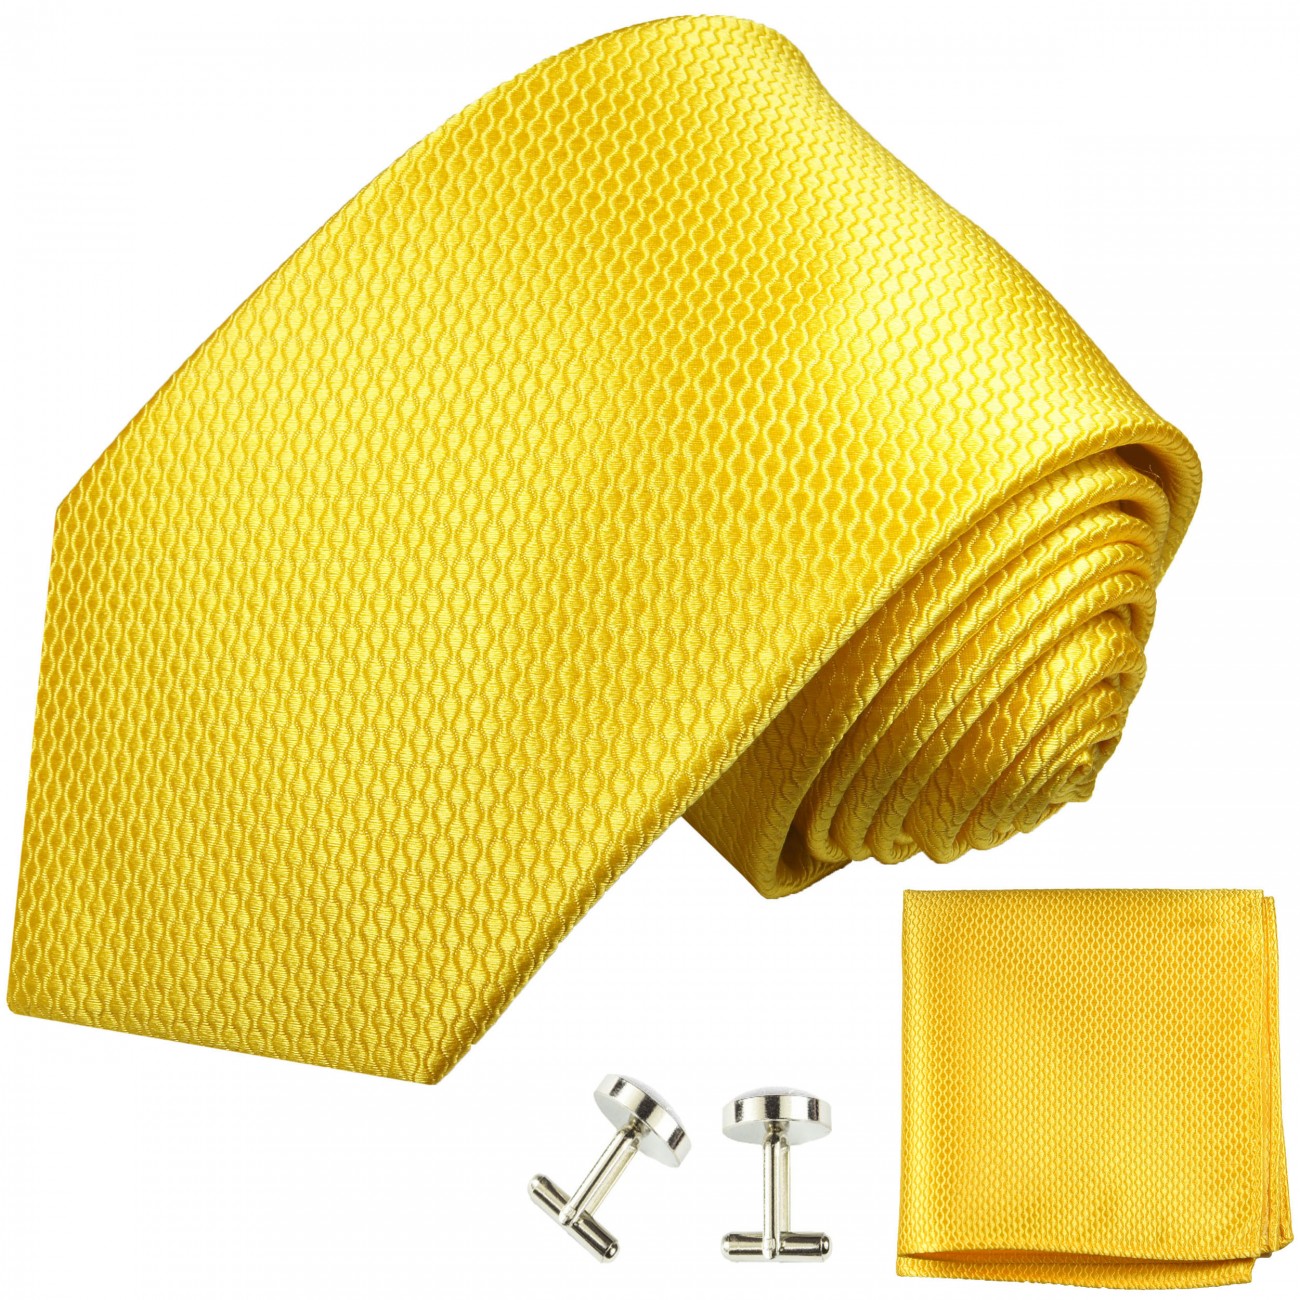 Krawatte gelb uni mit Einstecktuch und Manschettenknöpfe